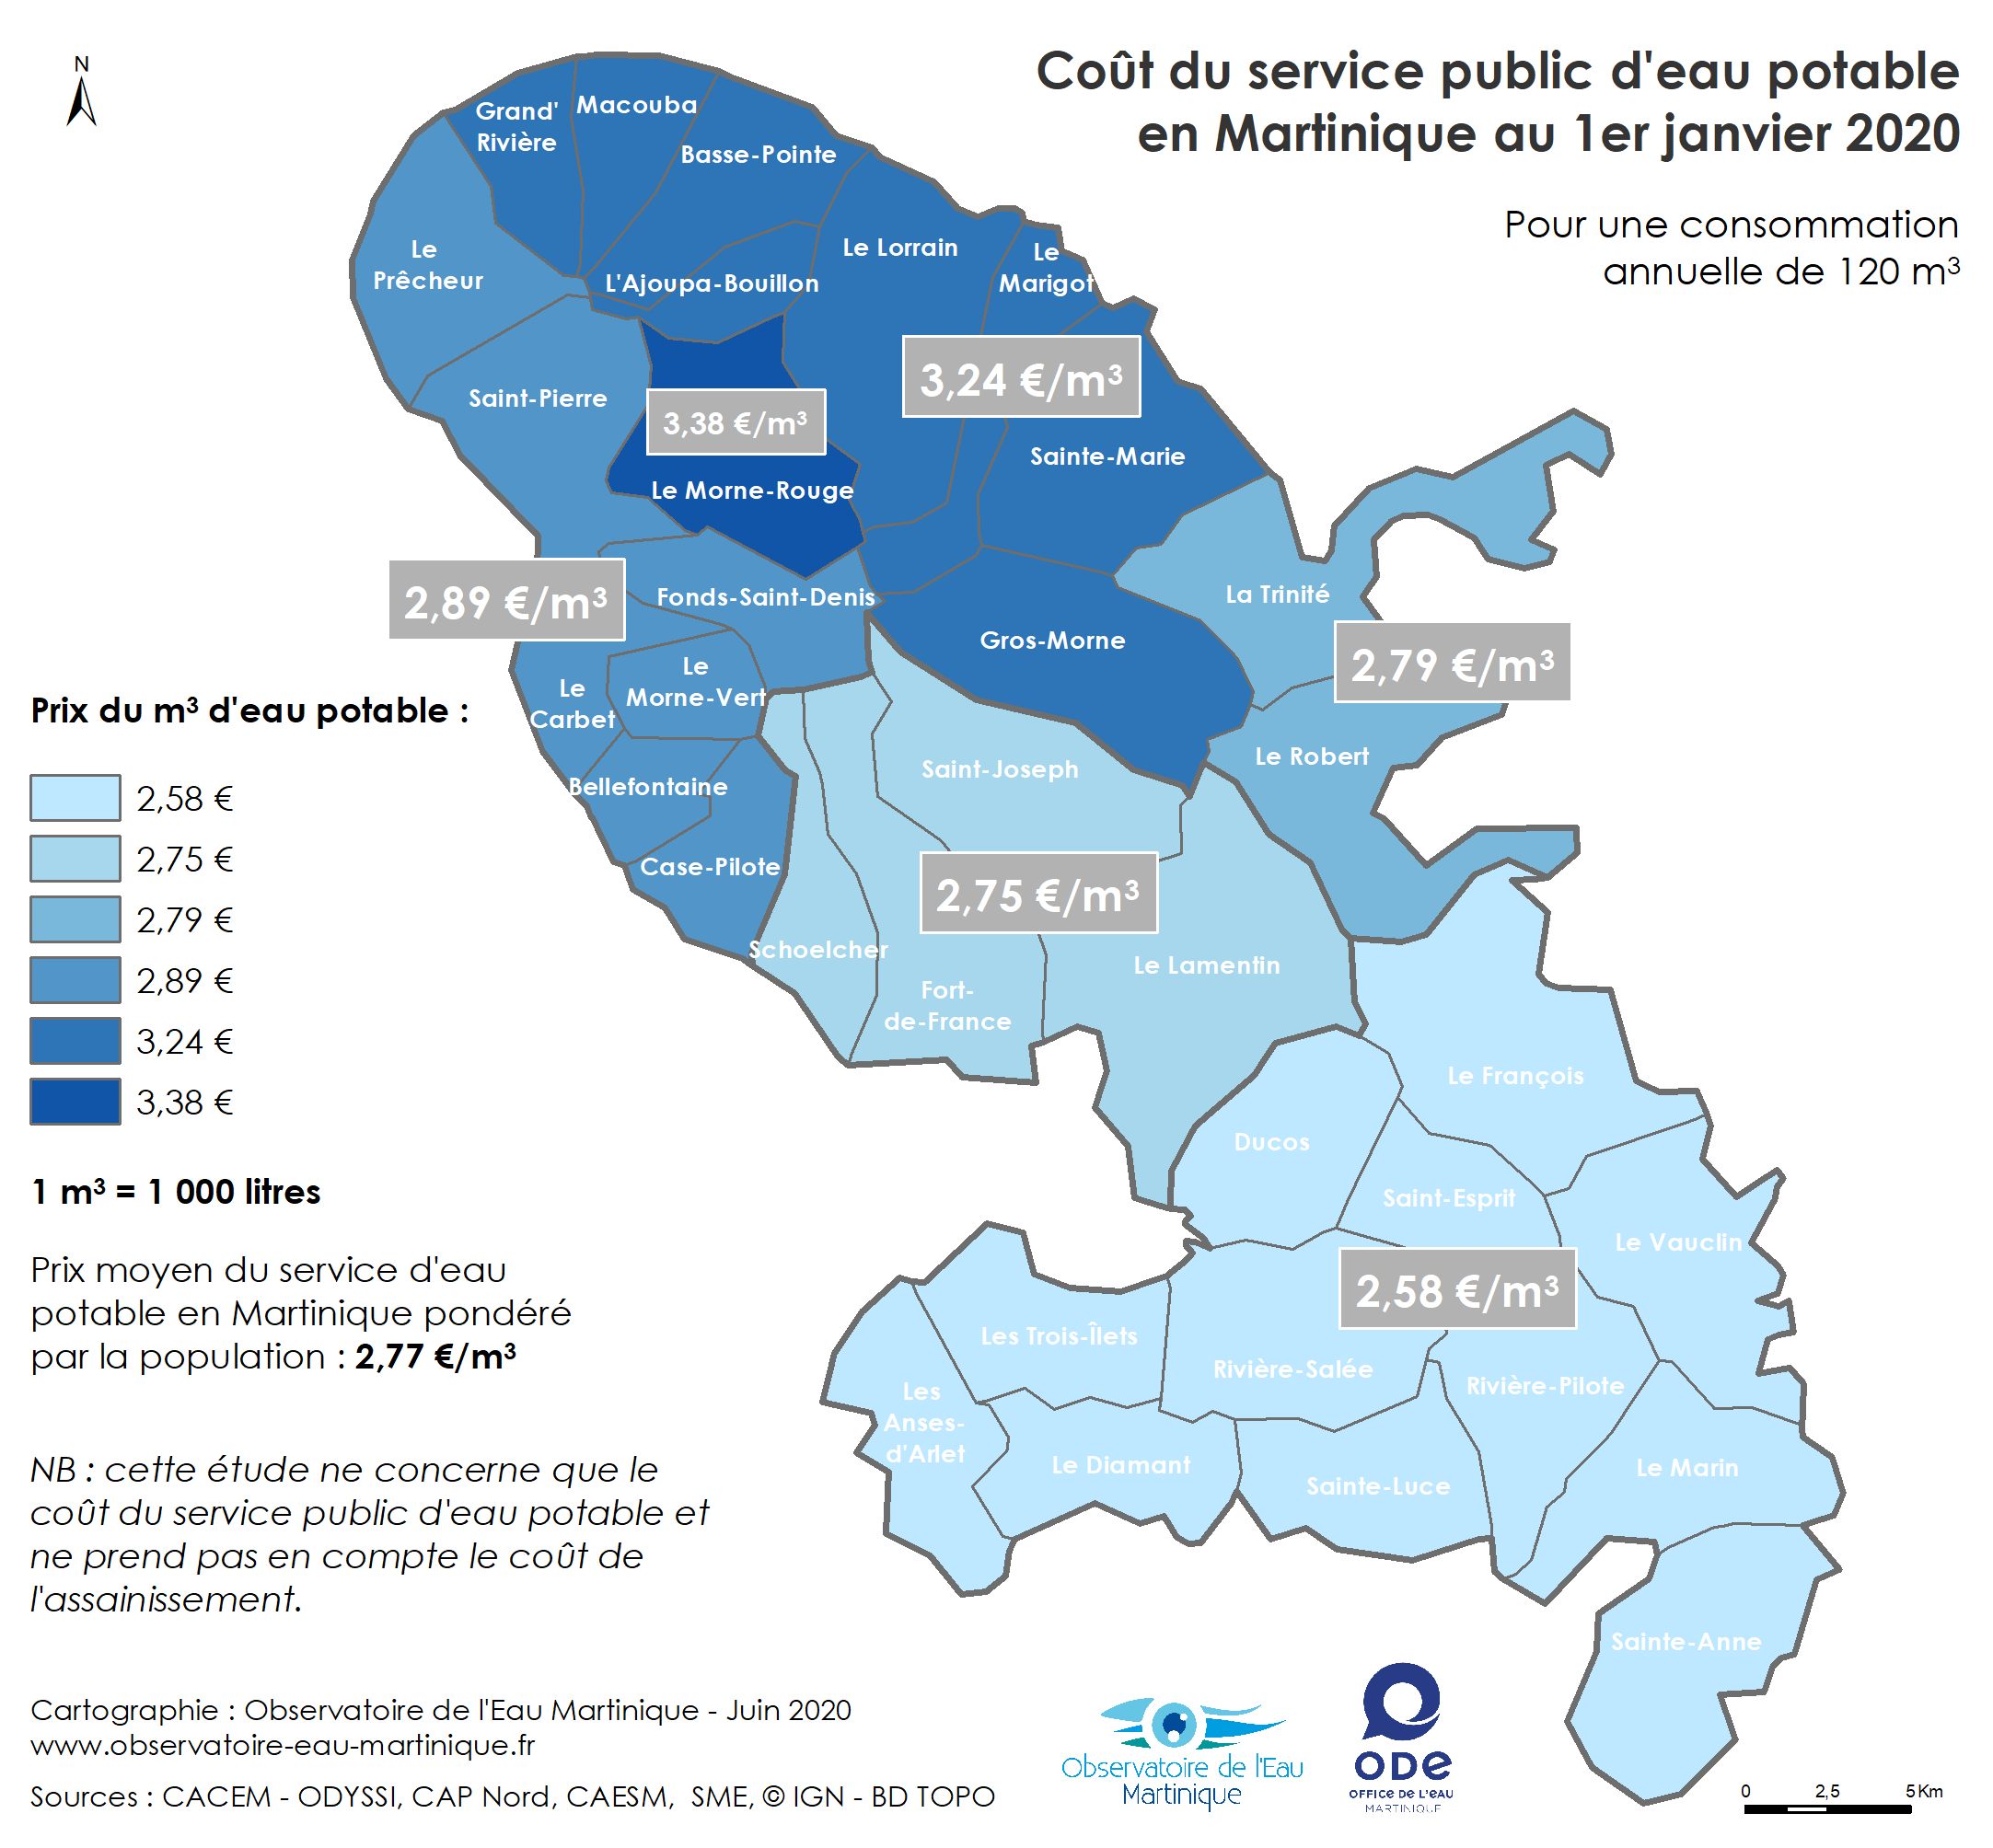 Coût du service public d'eau potable en Martinique au 1er janvier 2020 